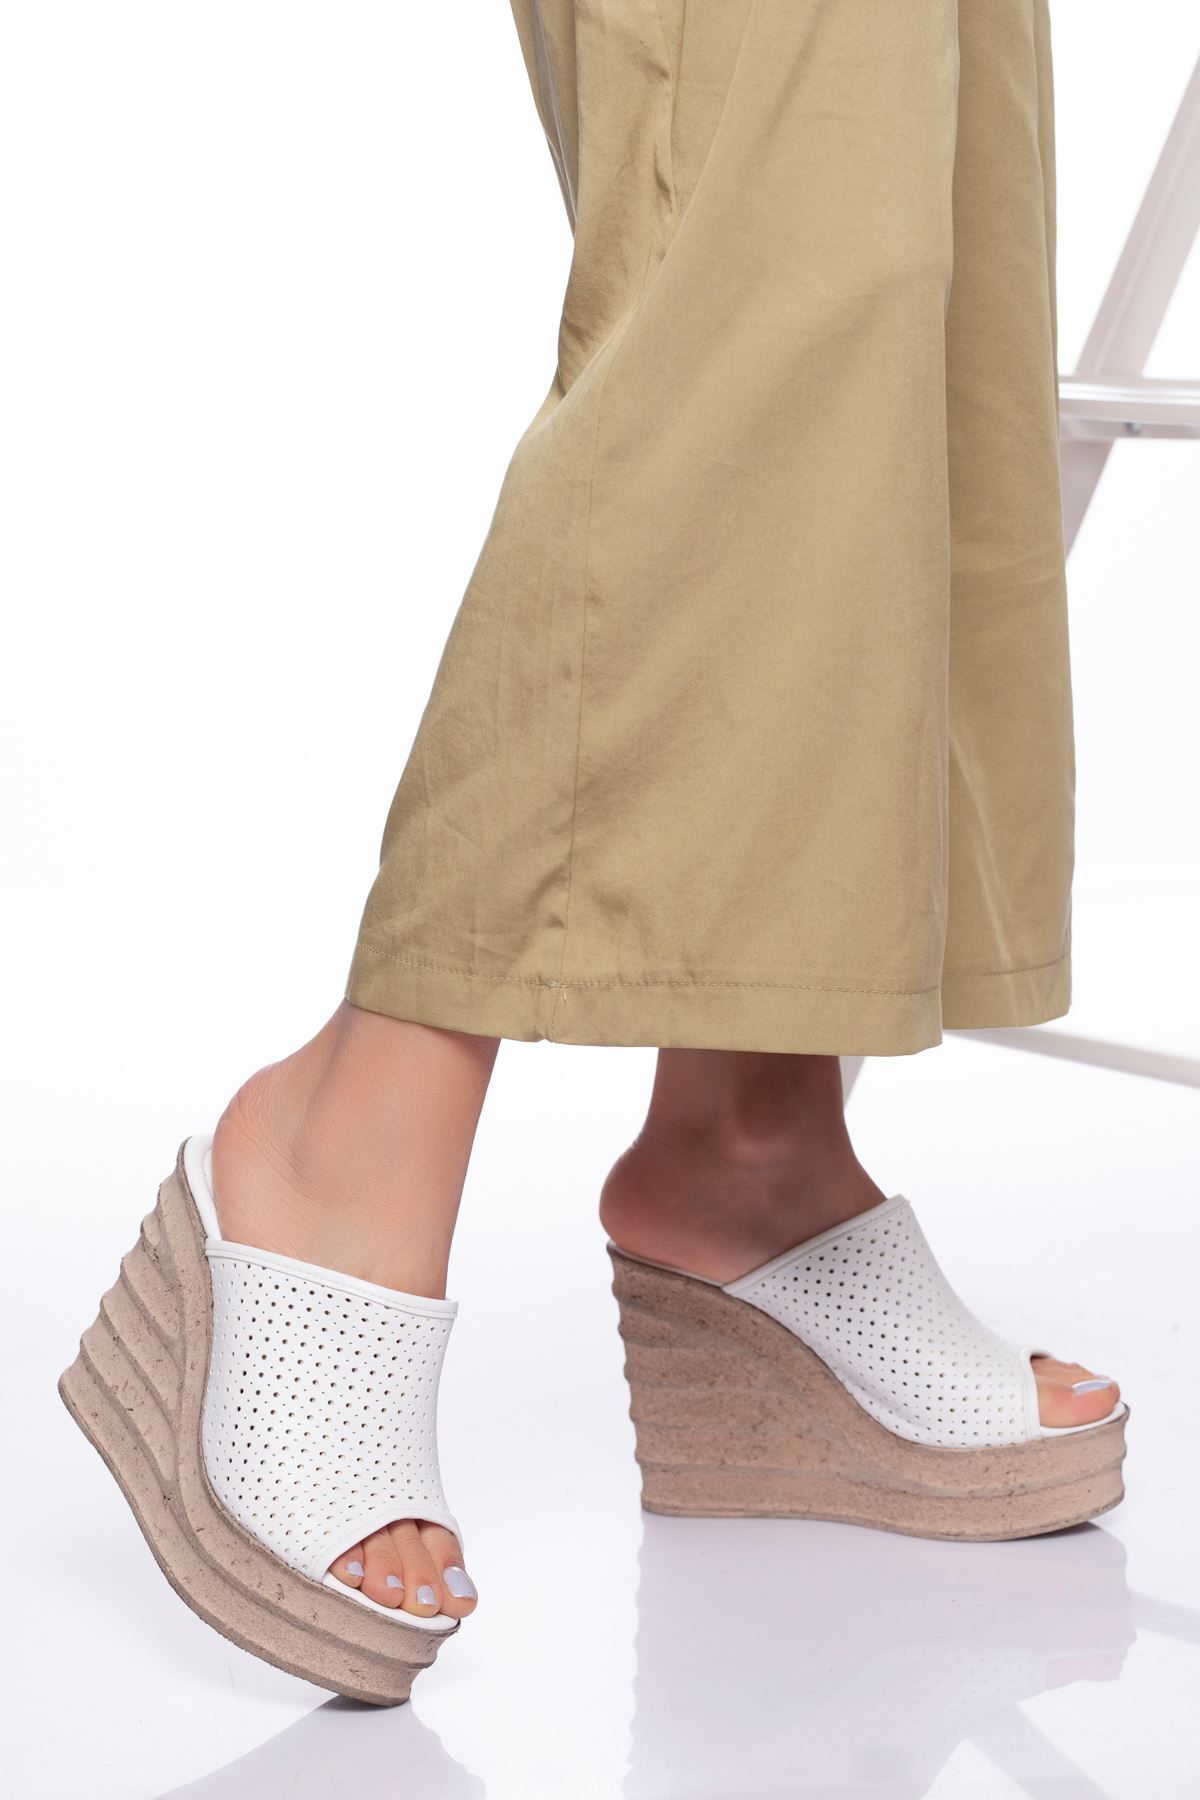 derithy Yüksek Dolgu Topuk Poli Comfort Taban Kalın Yüz Delikli Fantazi Klasik Terlik Sandalet Yazlık-beyaz